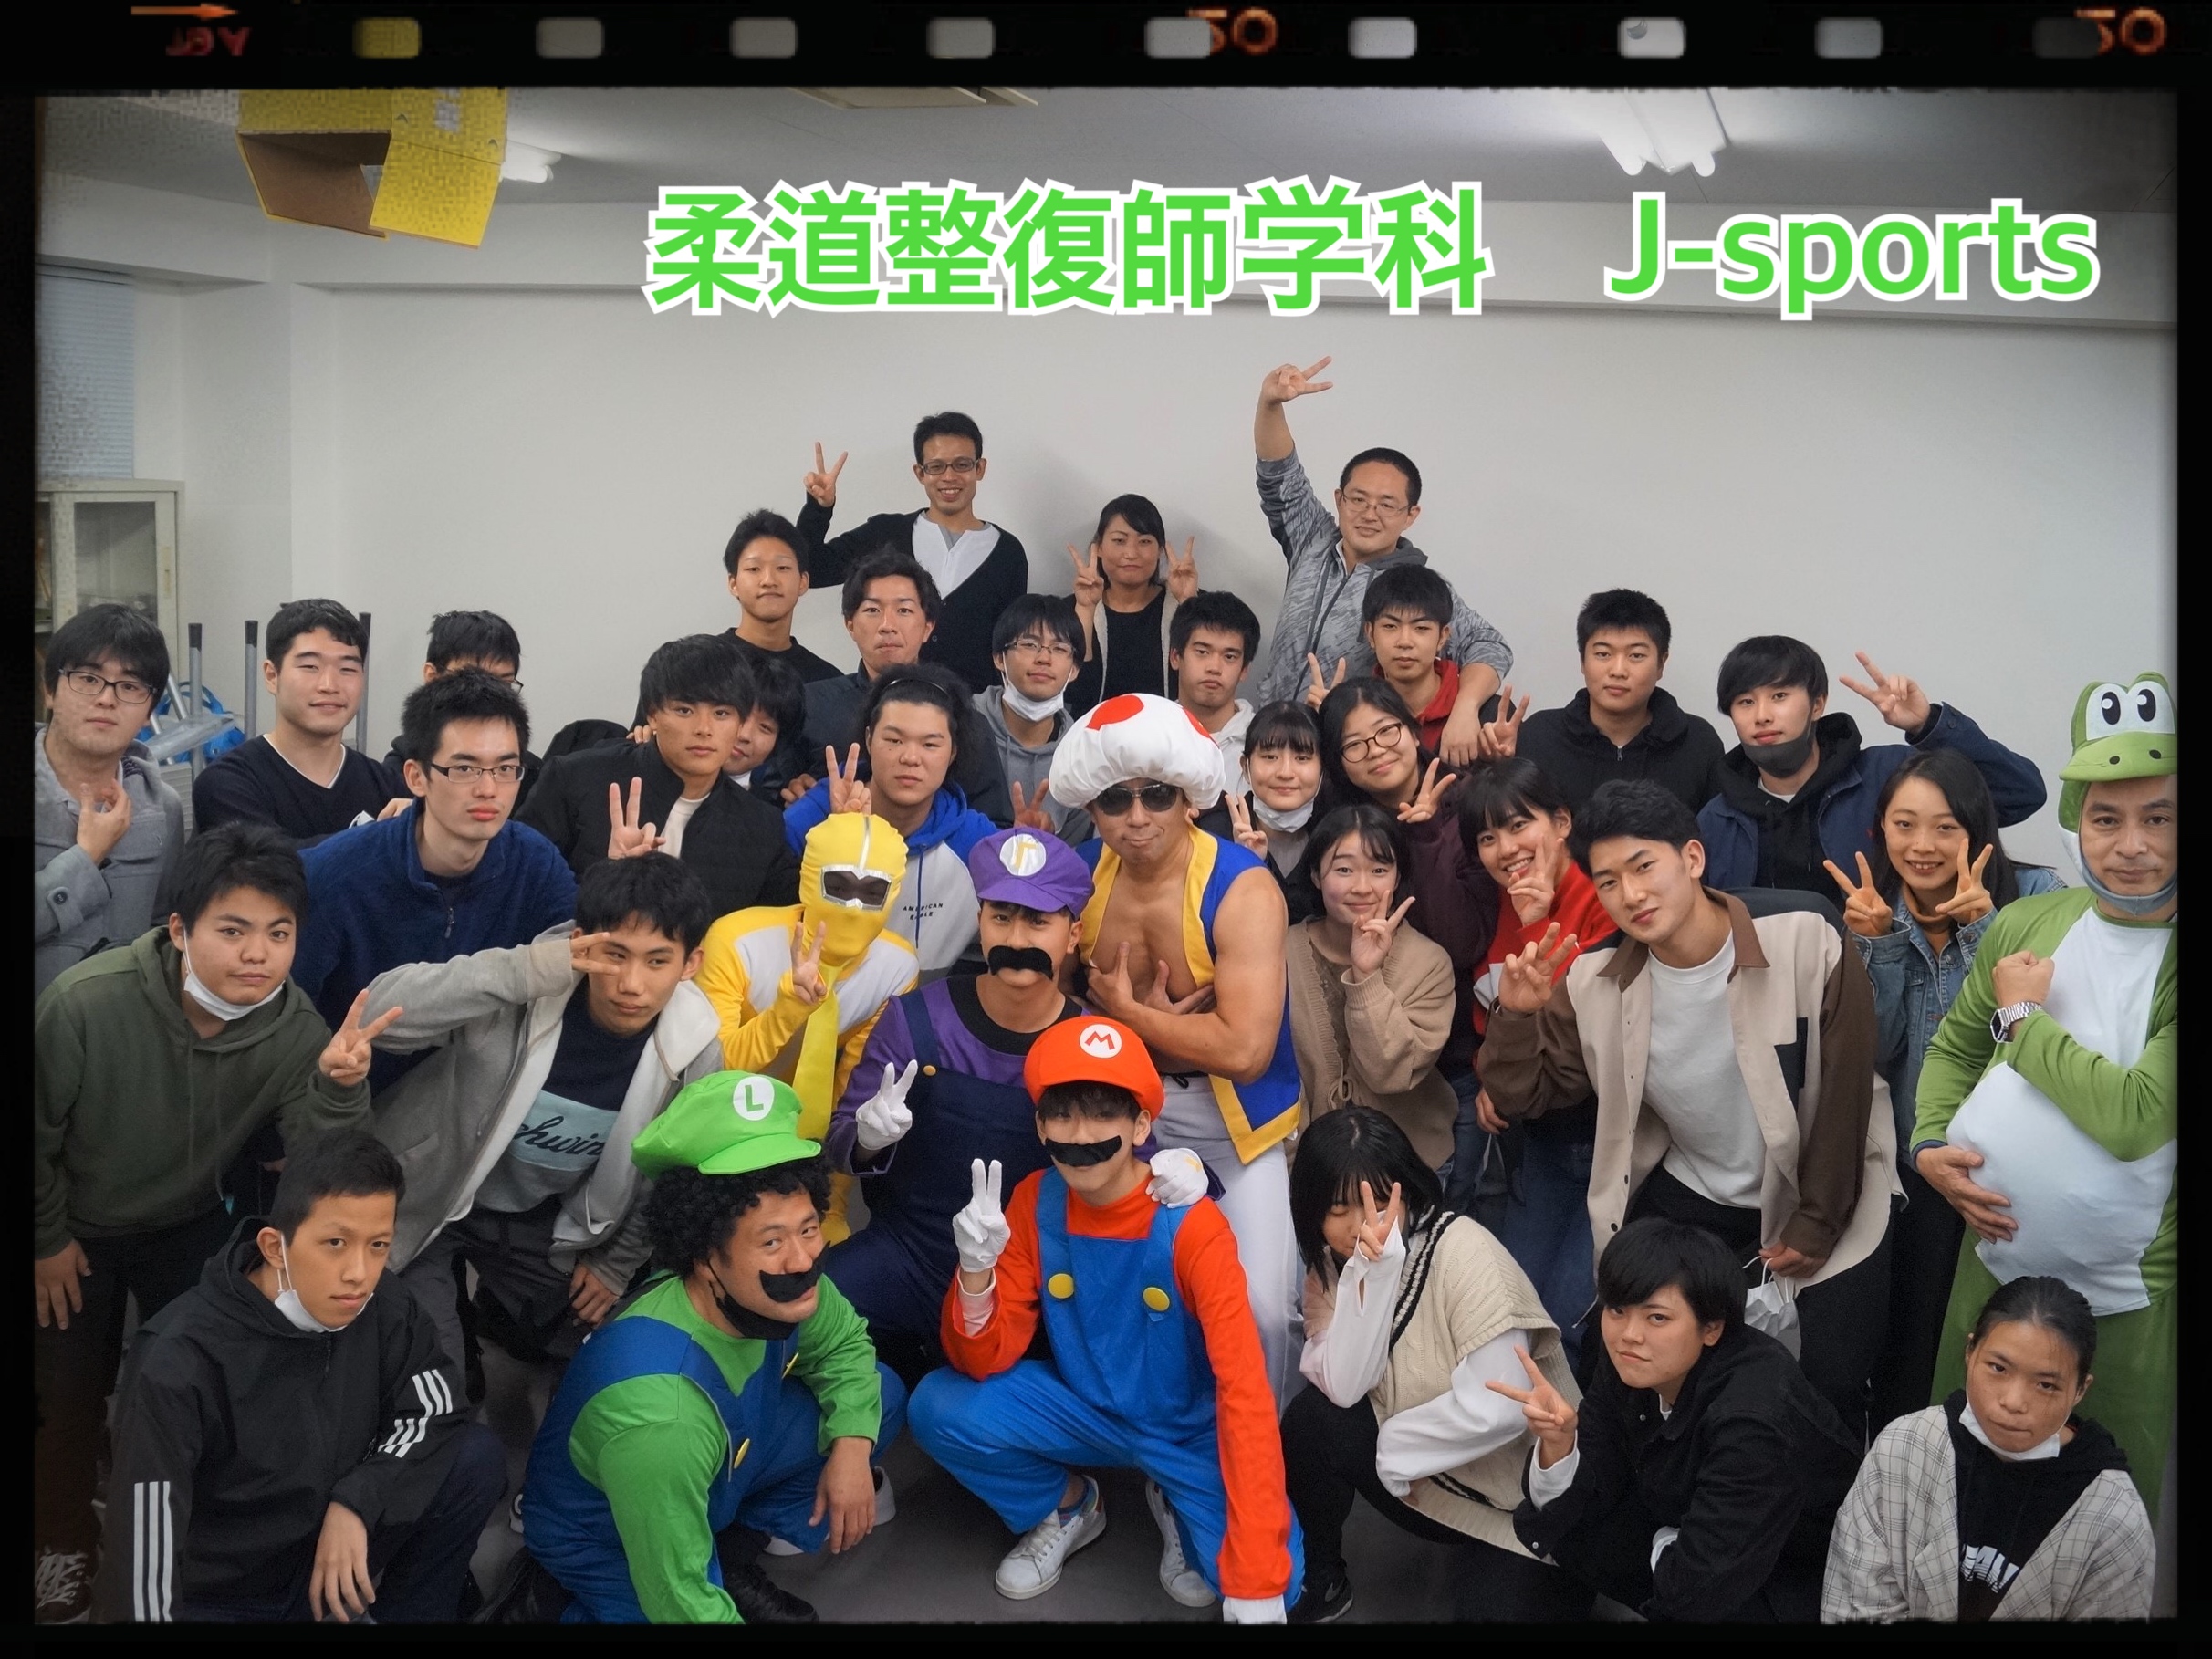 【柔道整復師学科】J-sports